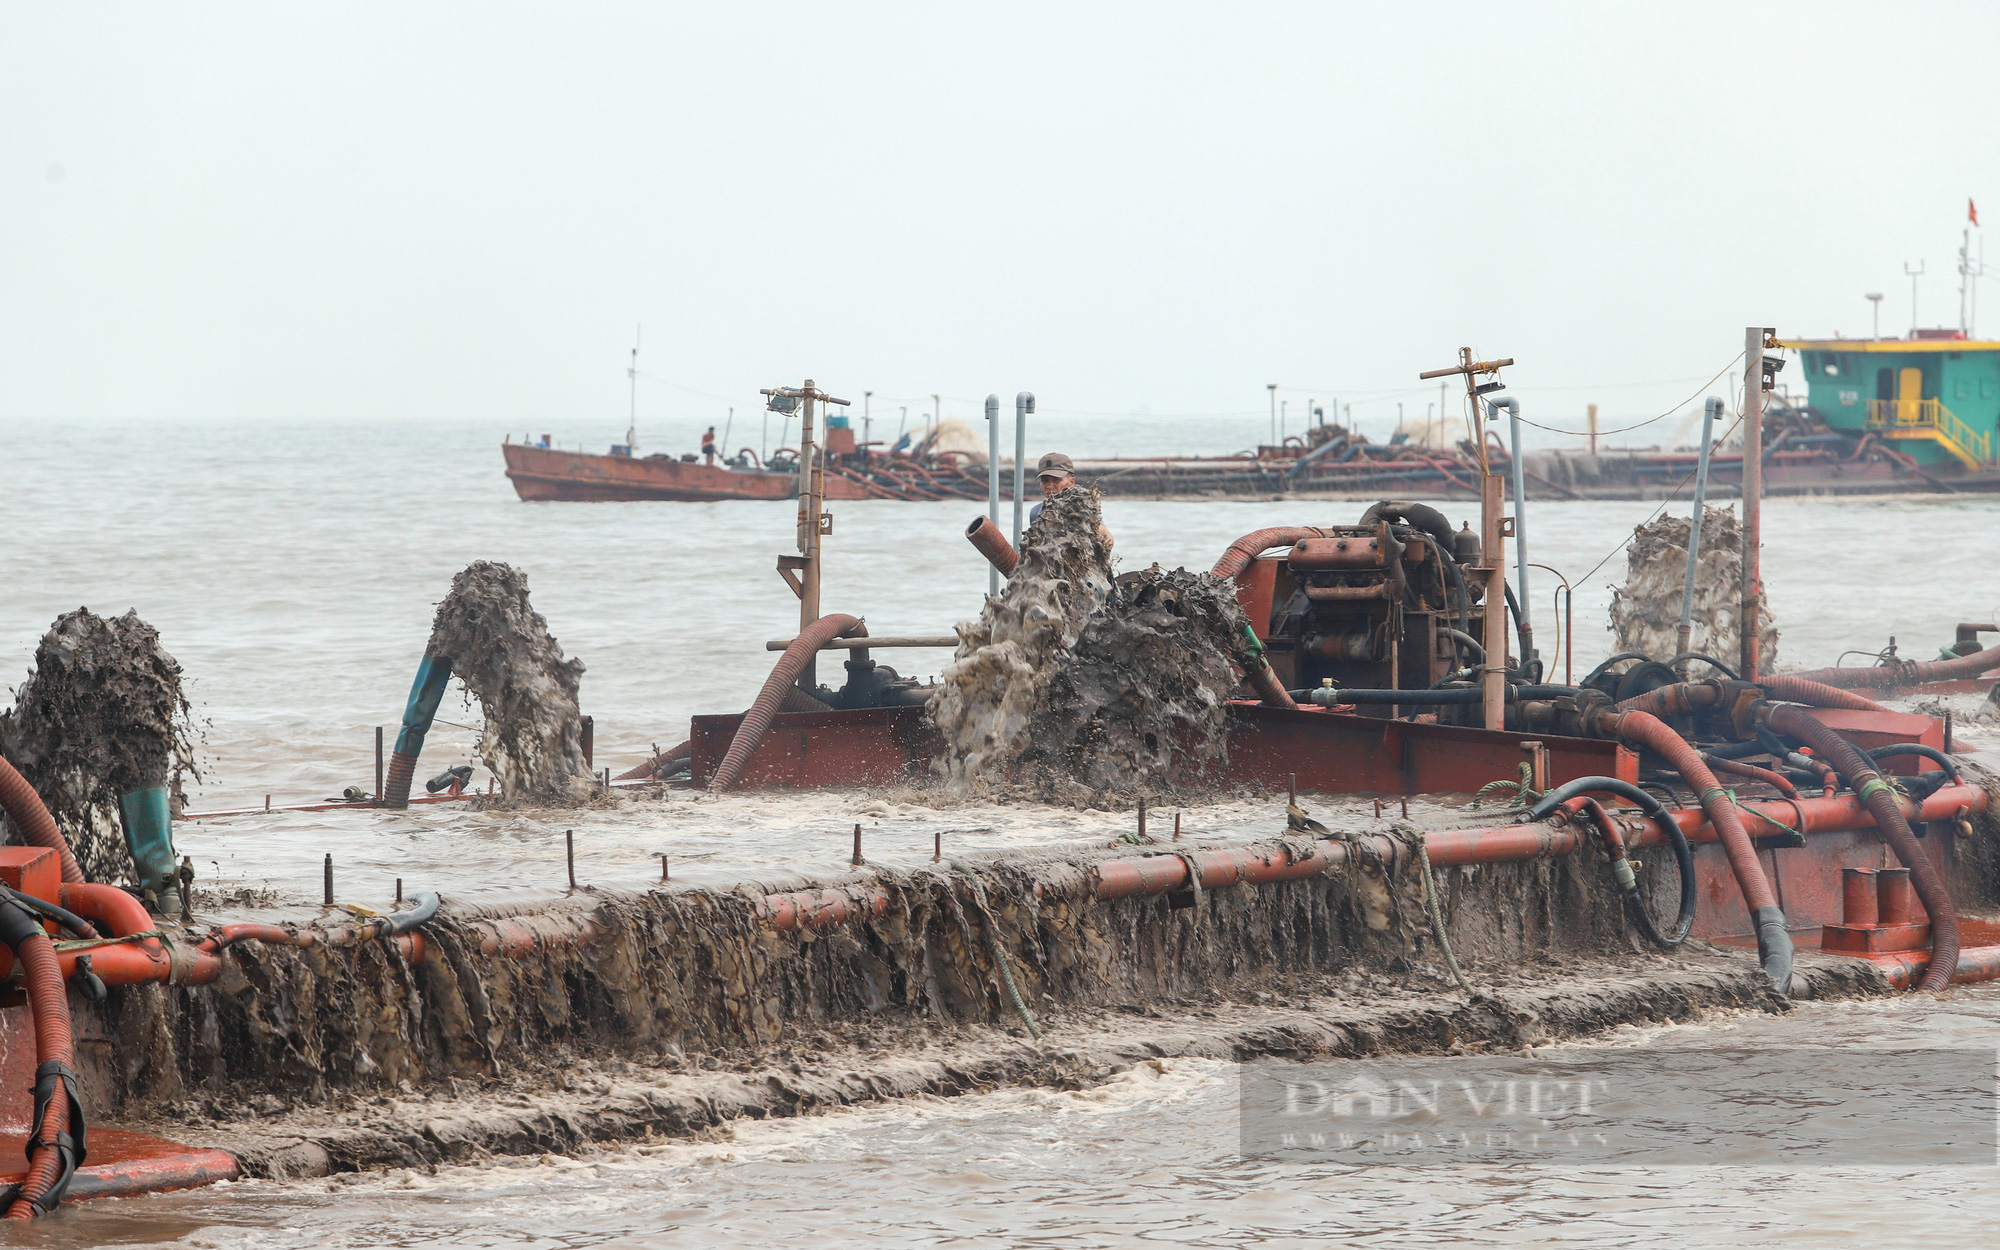 Hải Phòng: Đối thoại giữa doanh nghiệp khai thác cát và người nuôi ngao ở huyện Kiến Thụy, chính quyền... đuối lý